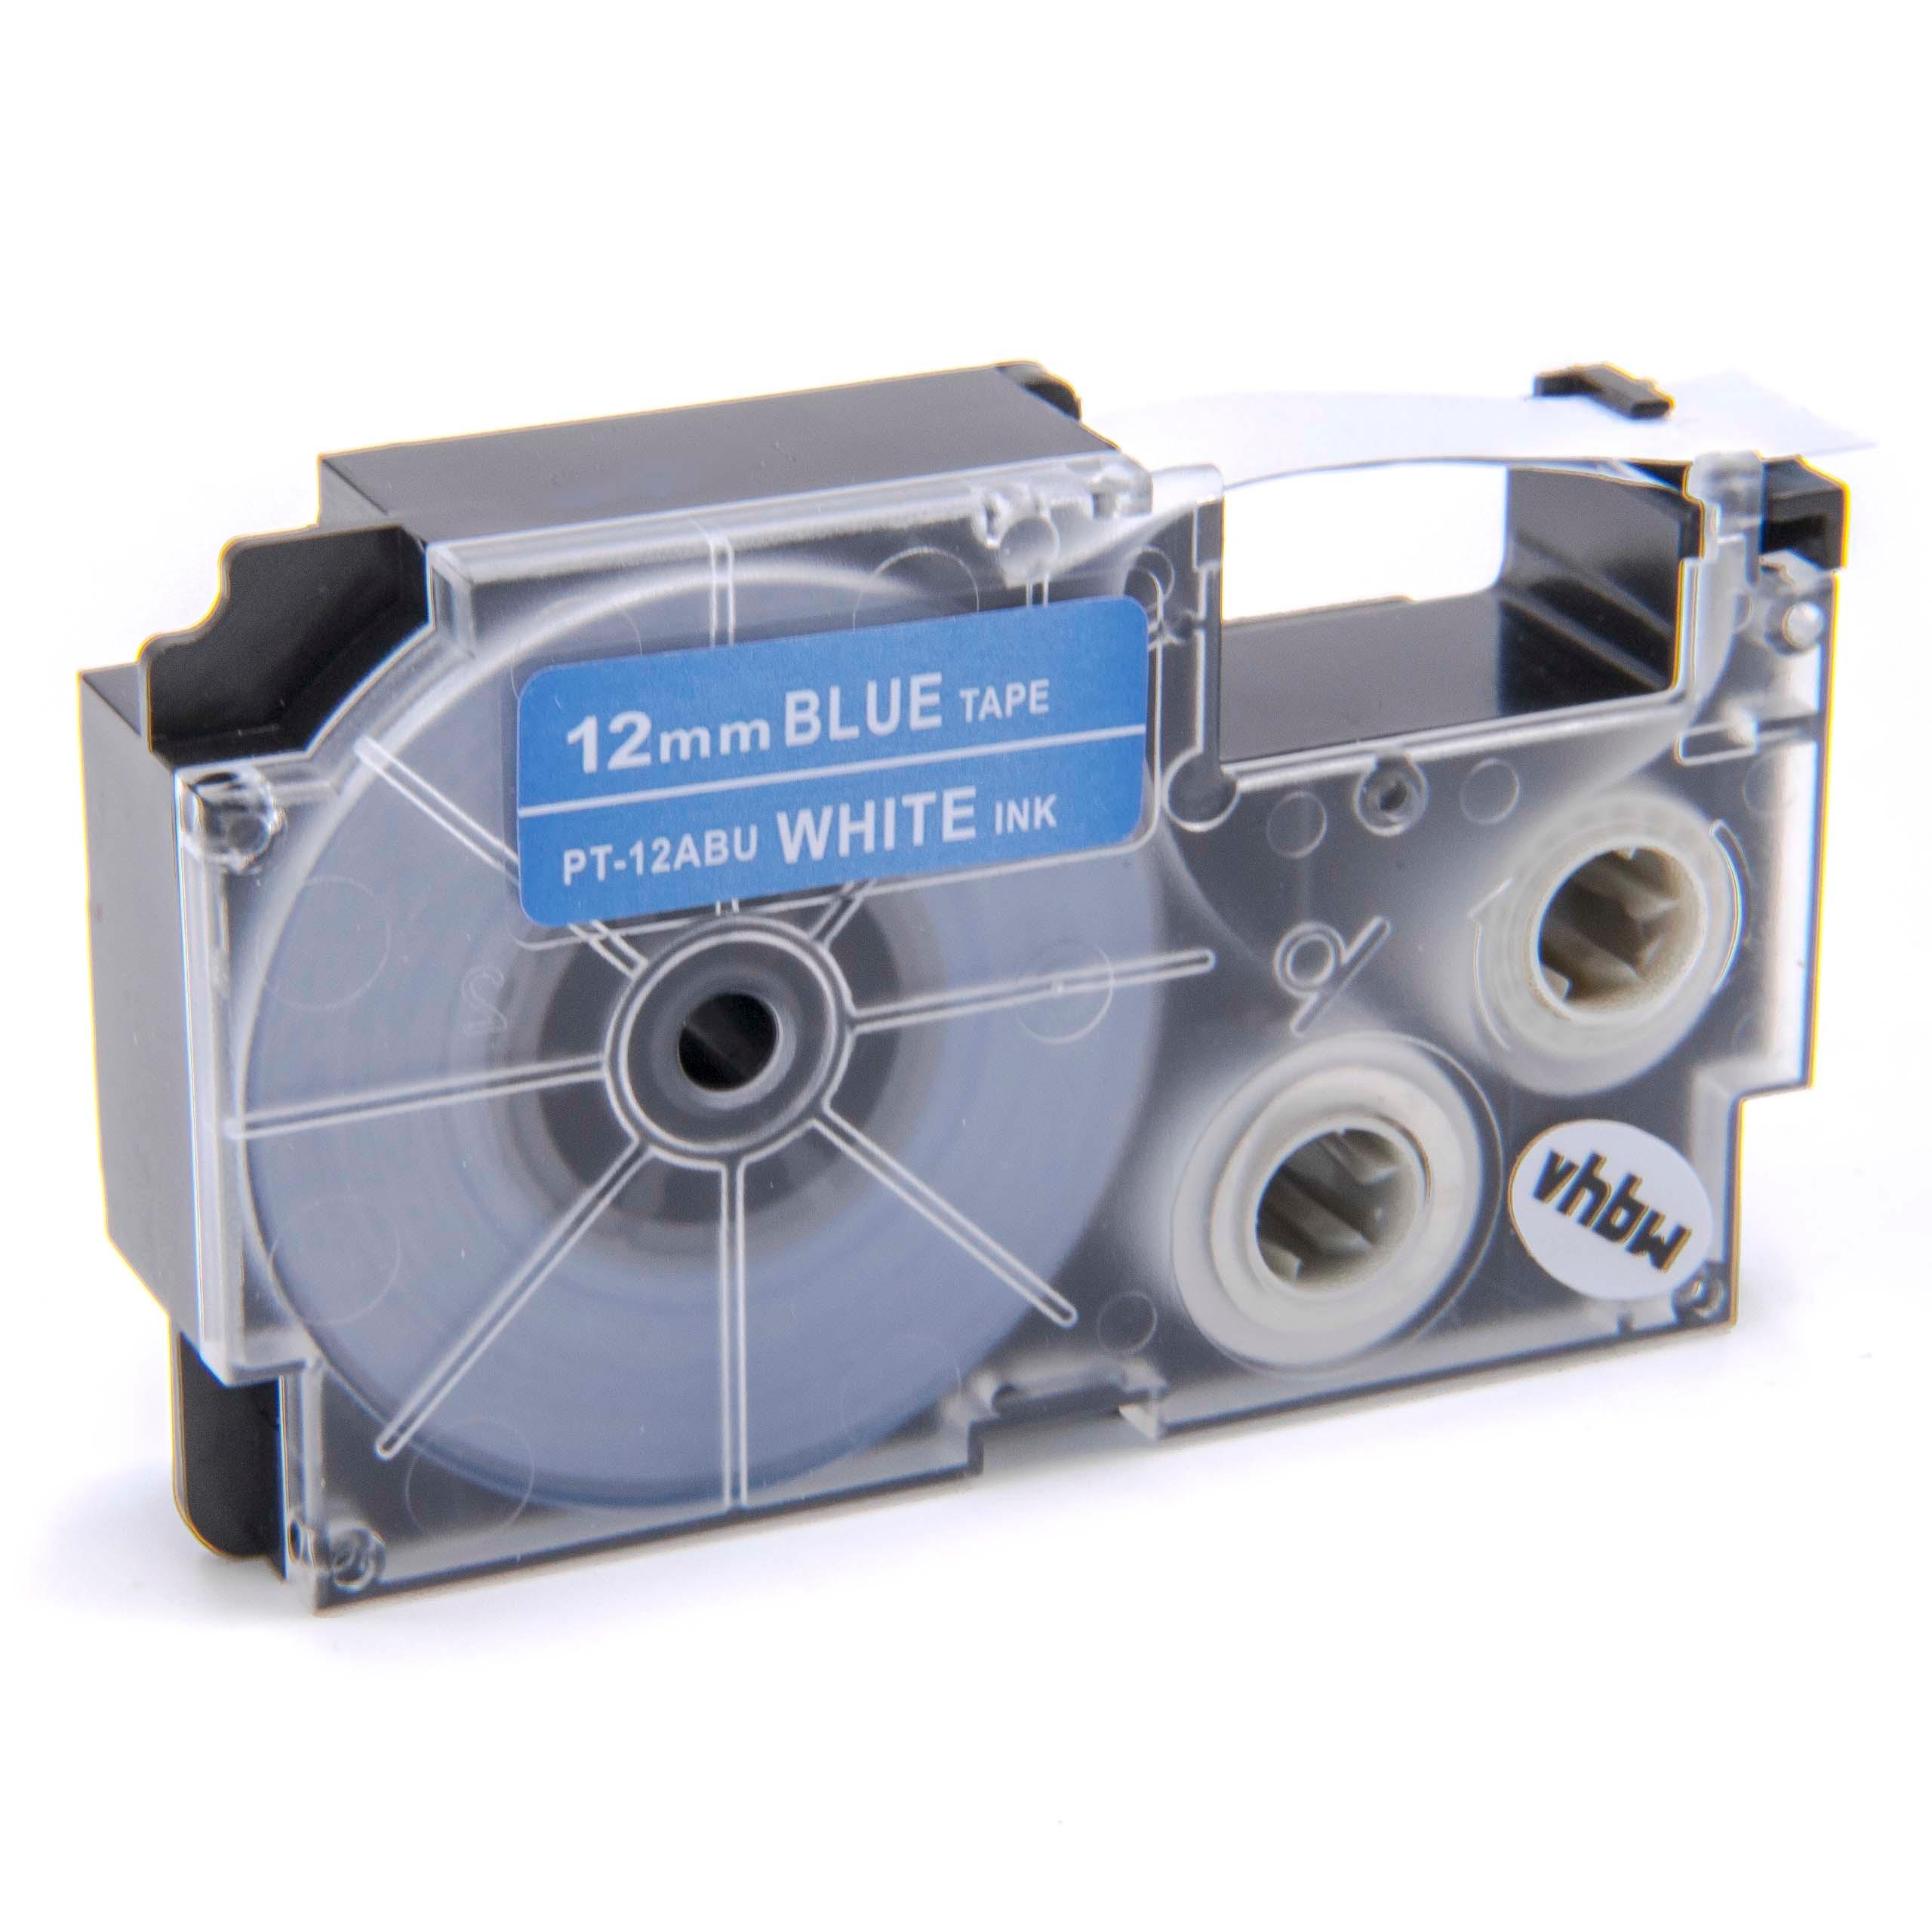 Cassetta nastro sostituisce Casio XR-12ABU1, XR-12ABU per etichettatrice Casio 12mm bianco su blu